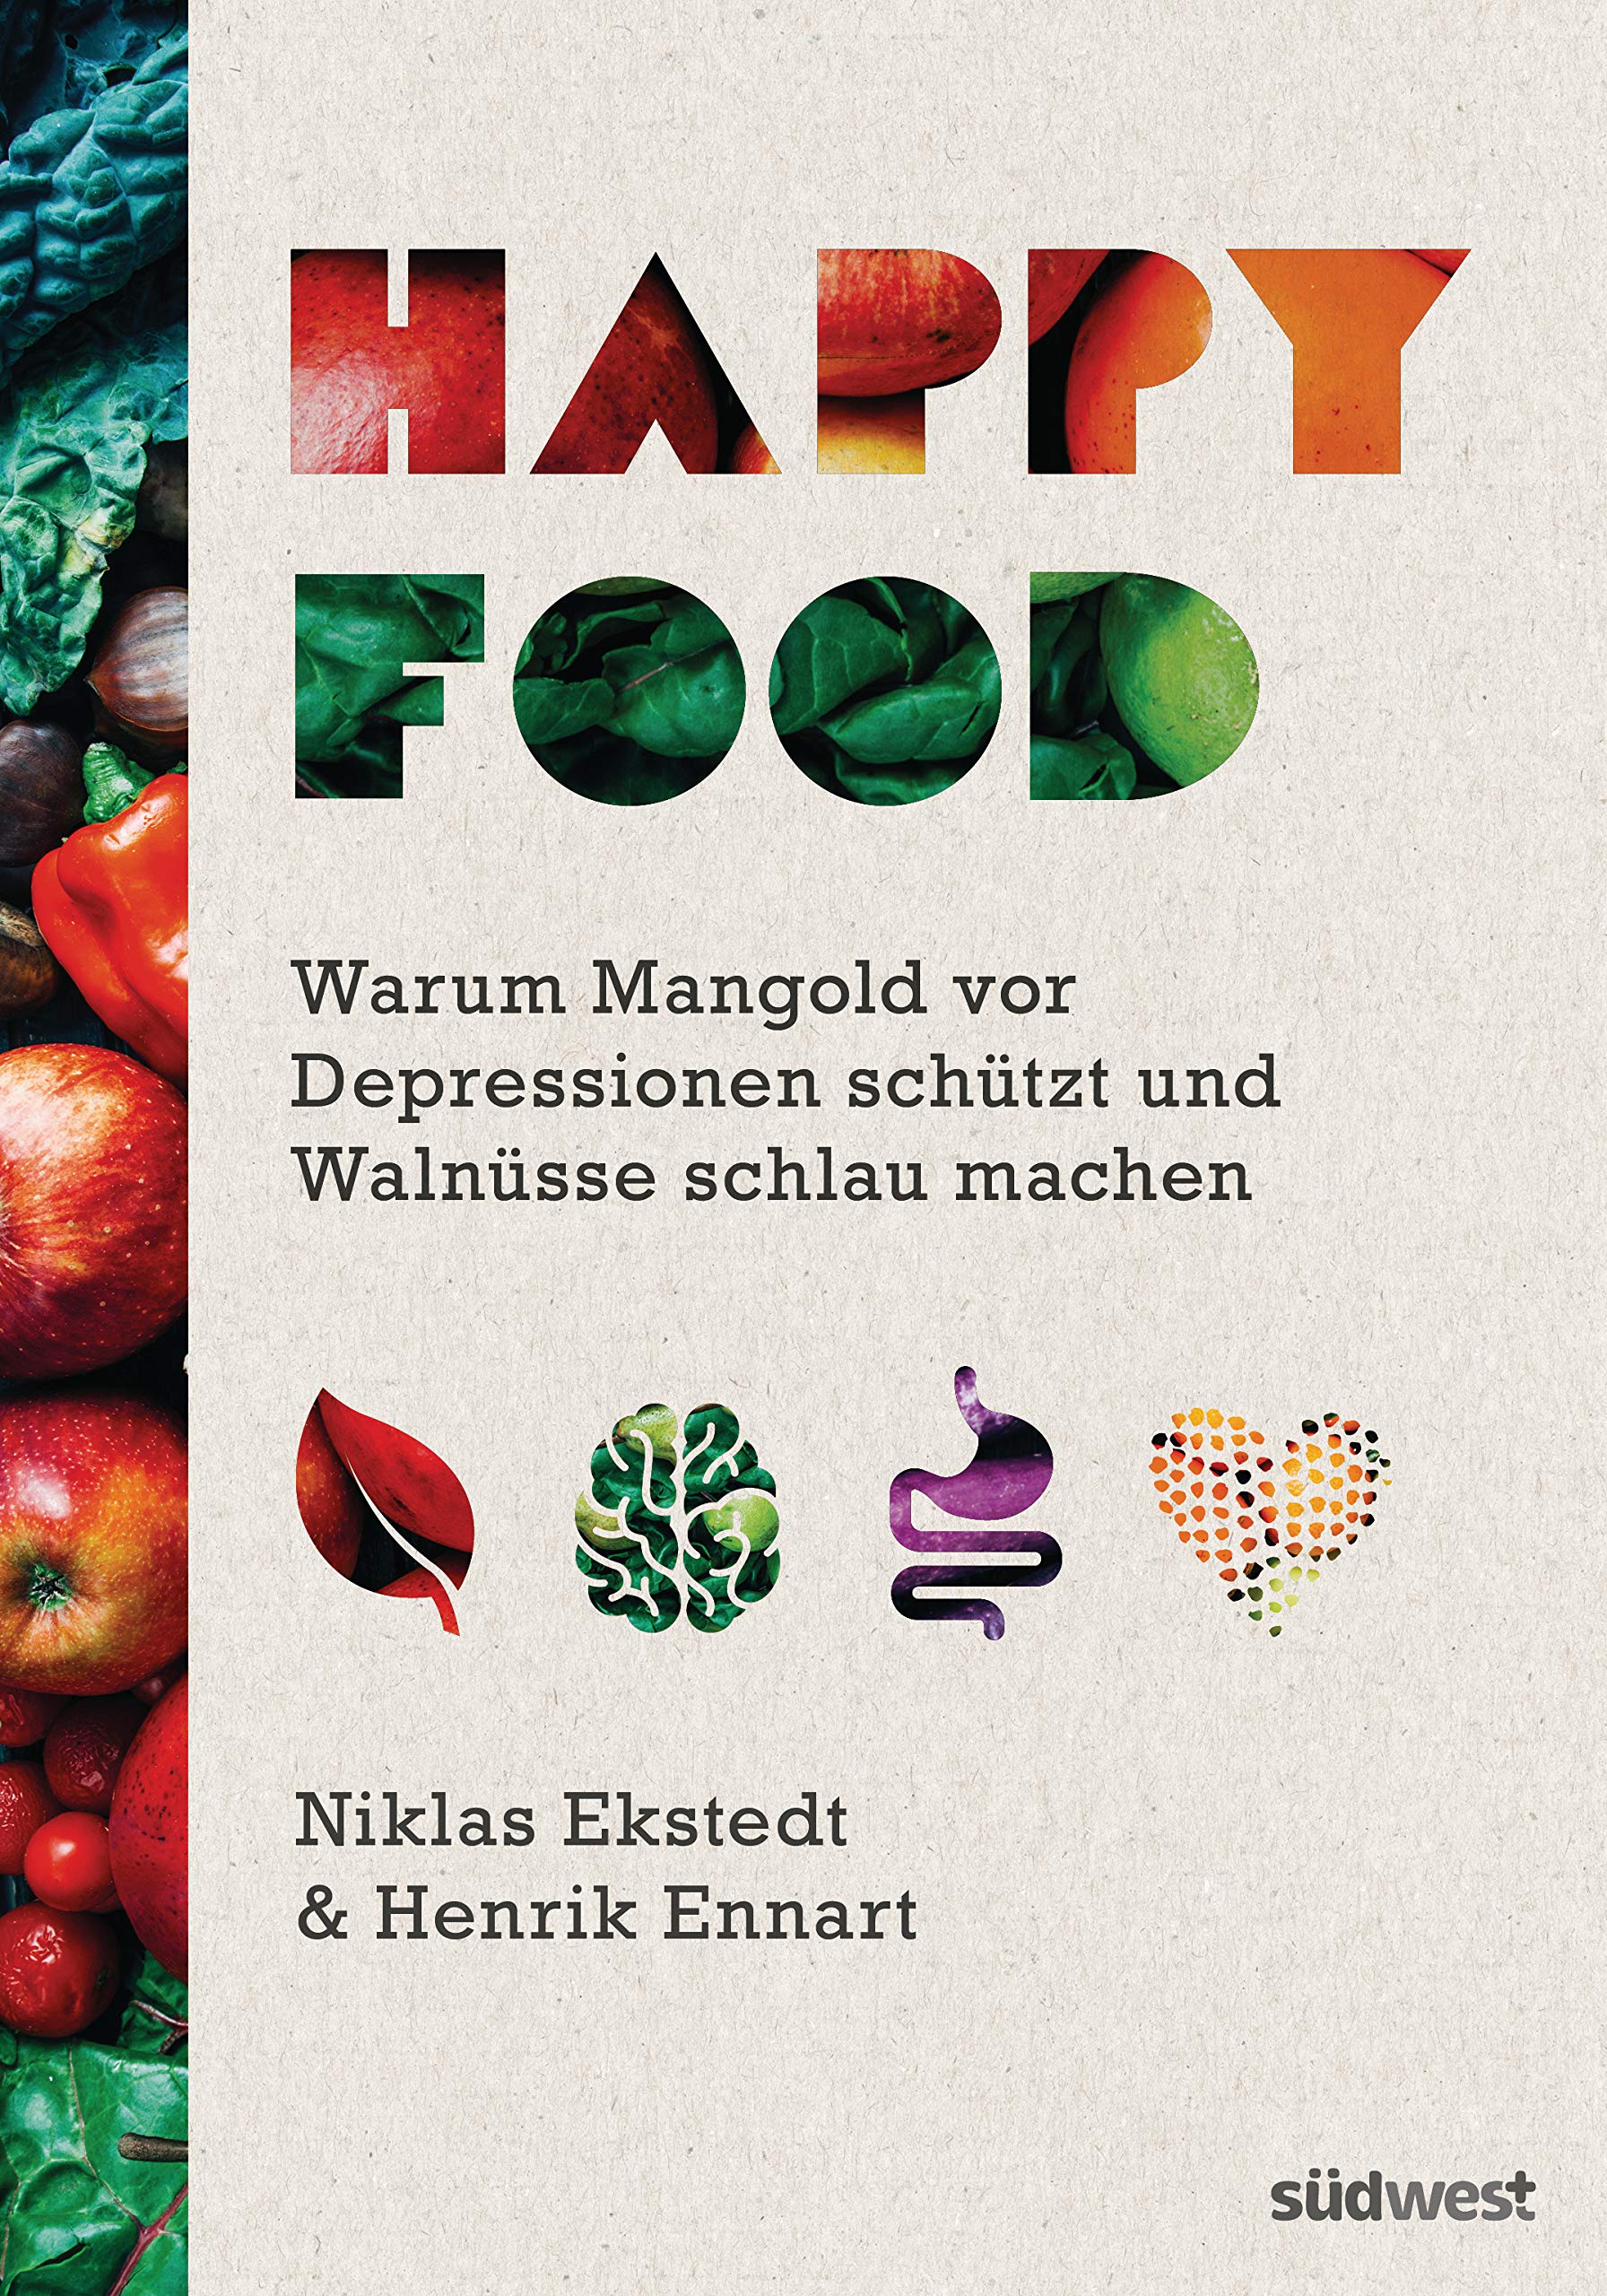 Buch über Glückshormone im Essen (Amazon)